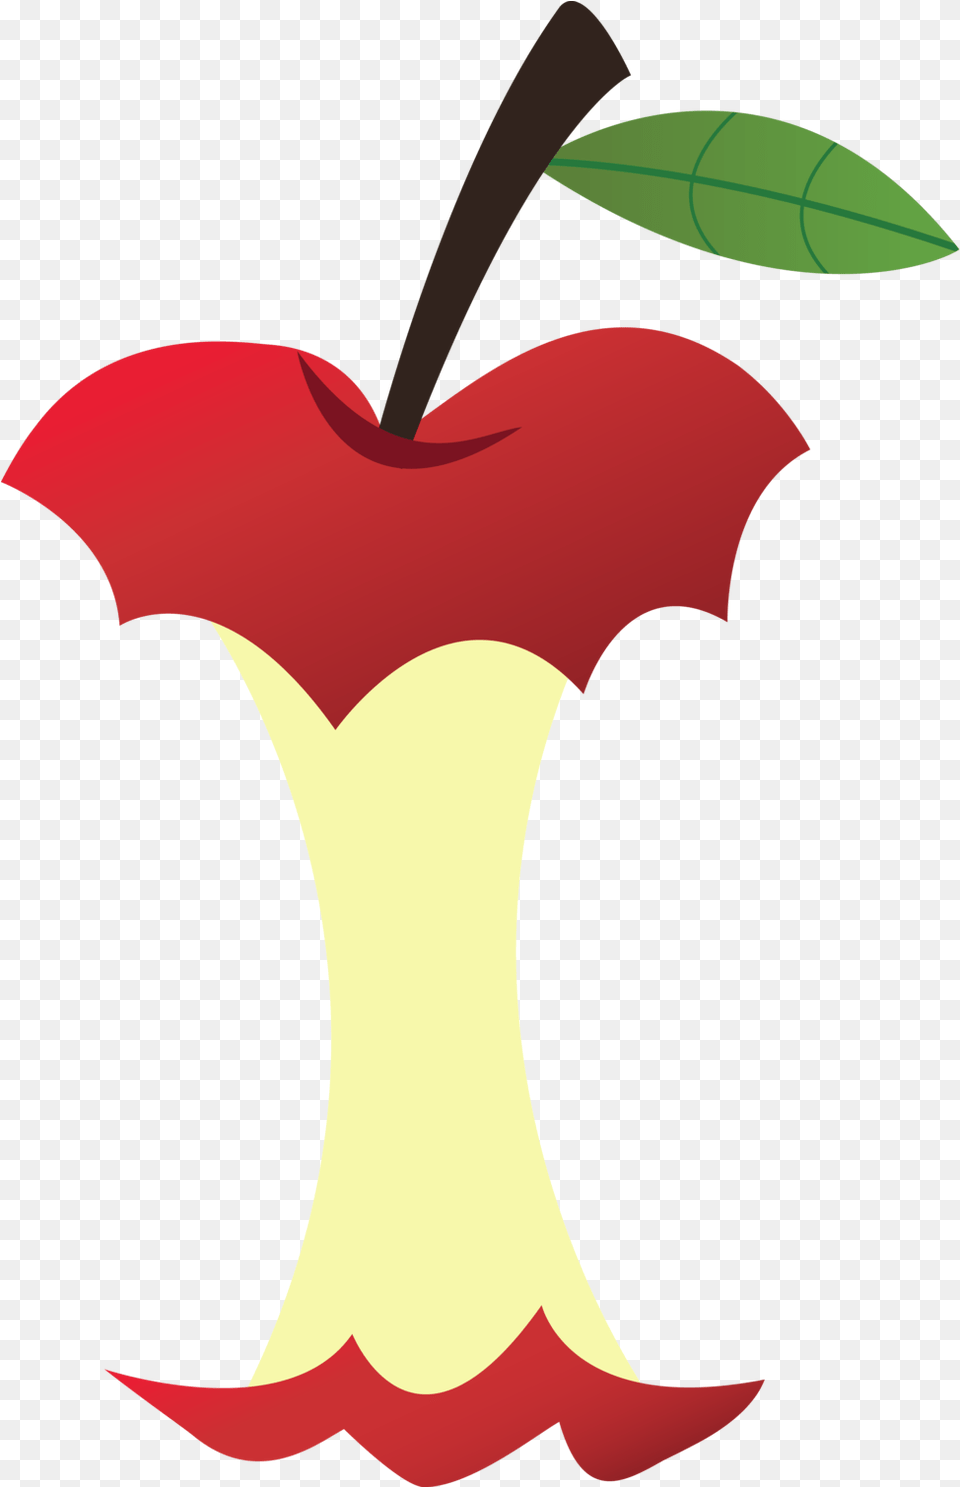 Clip Art Of A Transparent Apple Core Clipart, Flower, Petal, Plant, Animal Png